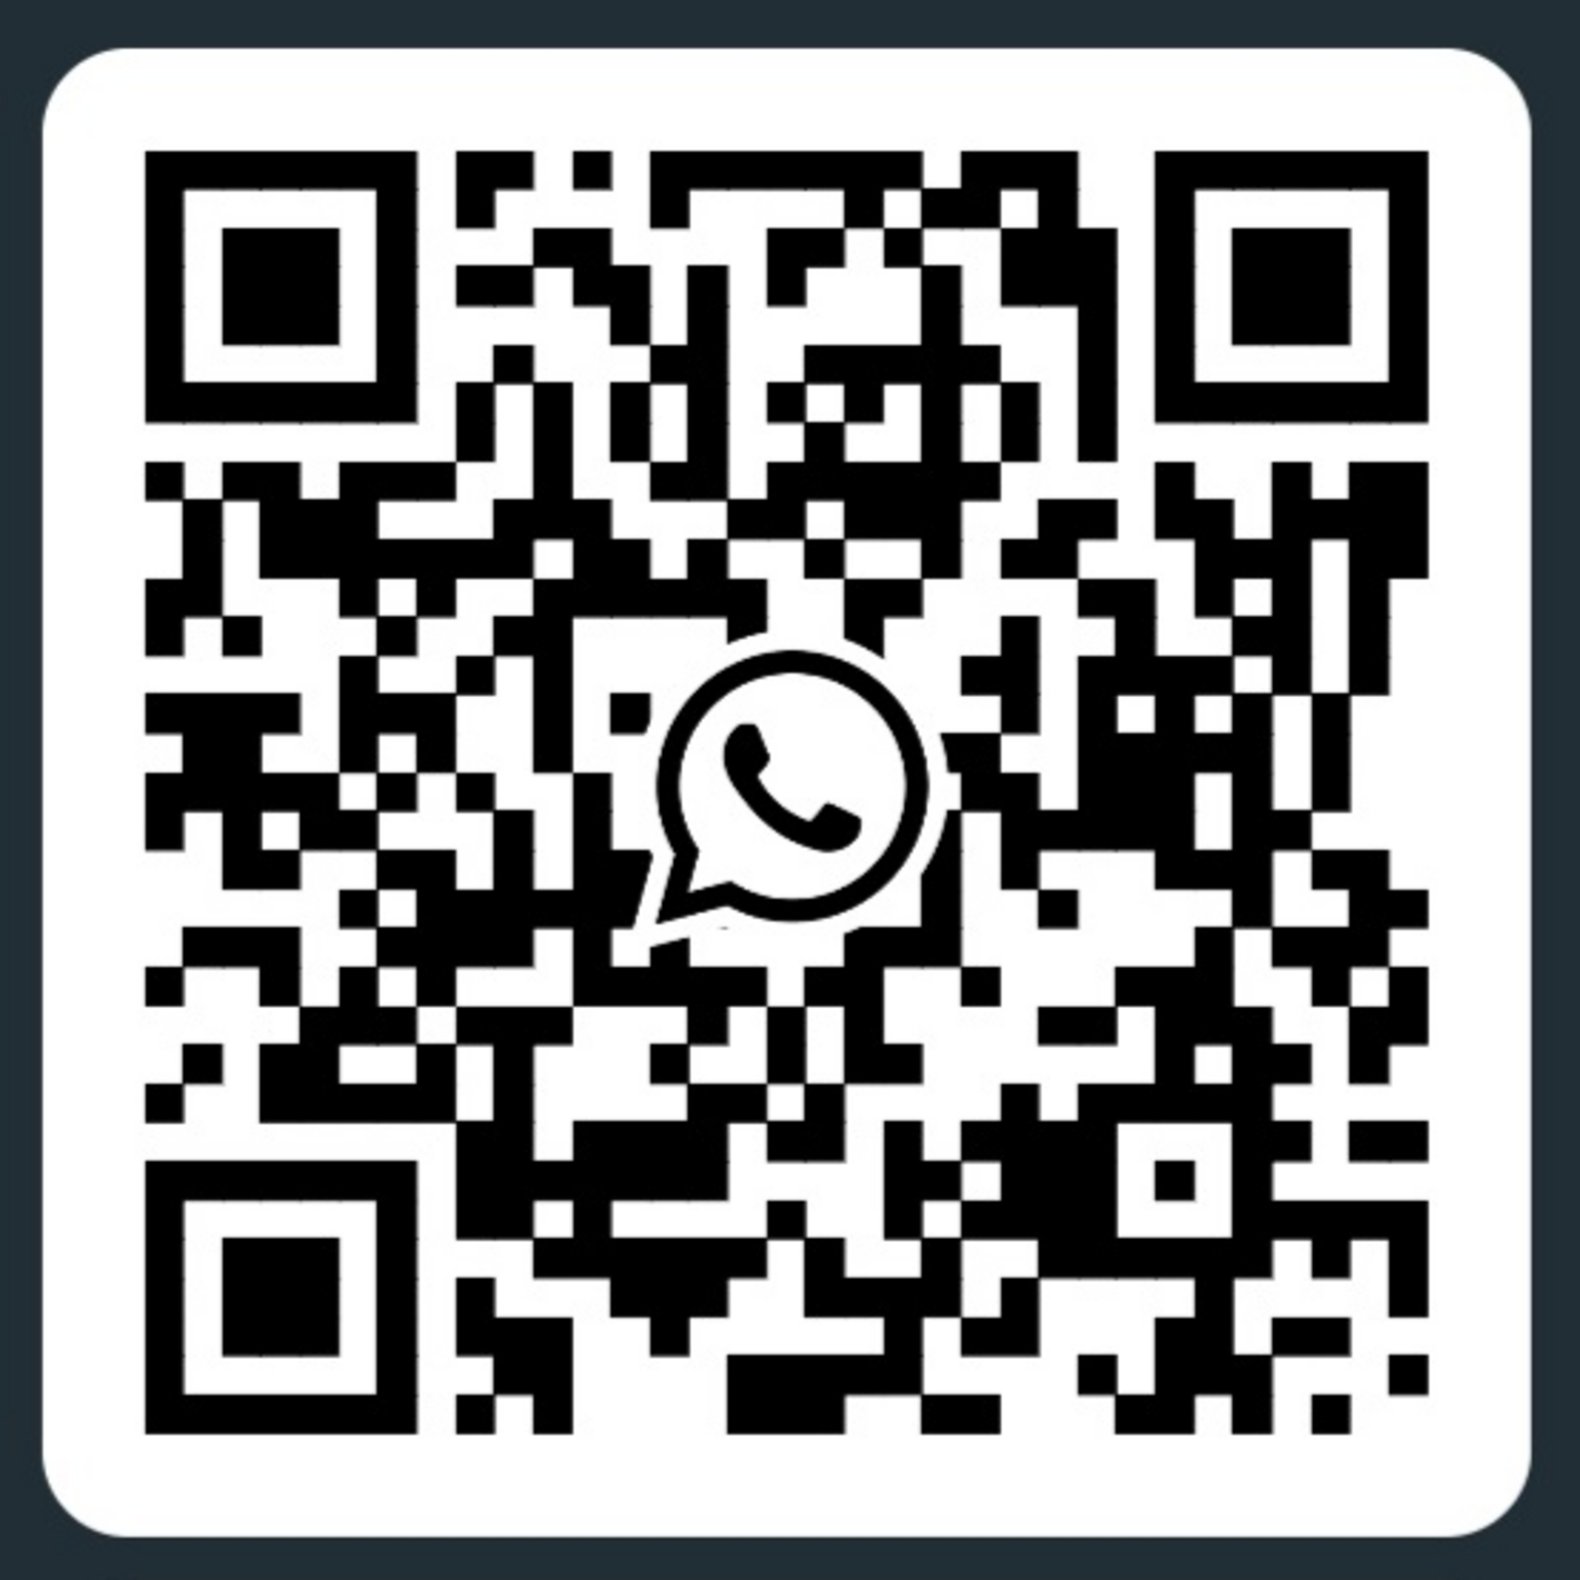 QR-Code für die Hochschulsportgruppe auf WhatsApp des Campus Horb